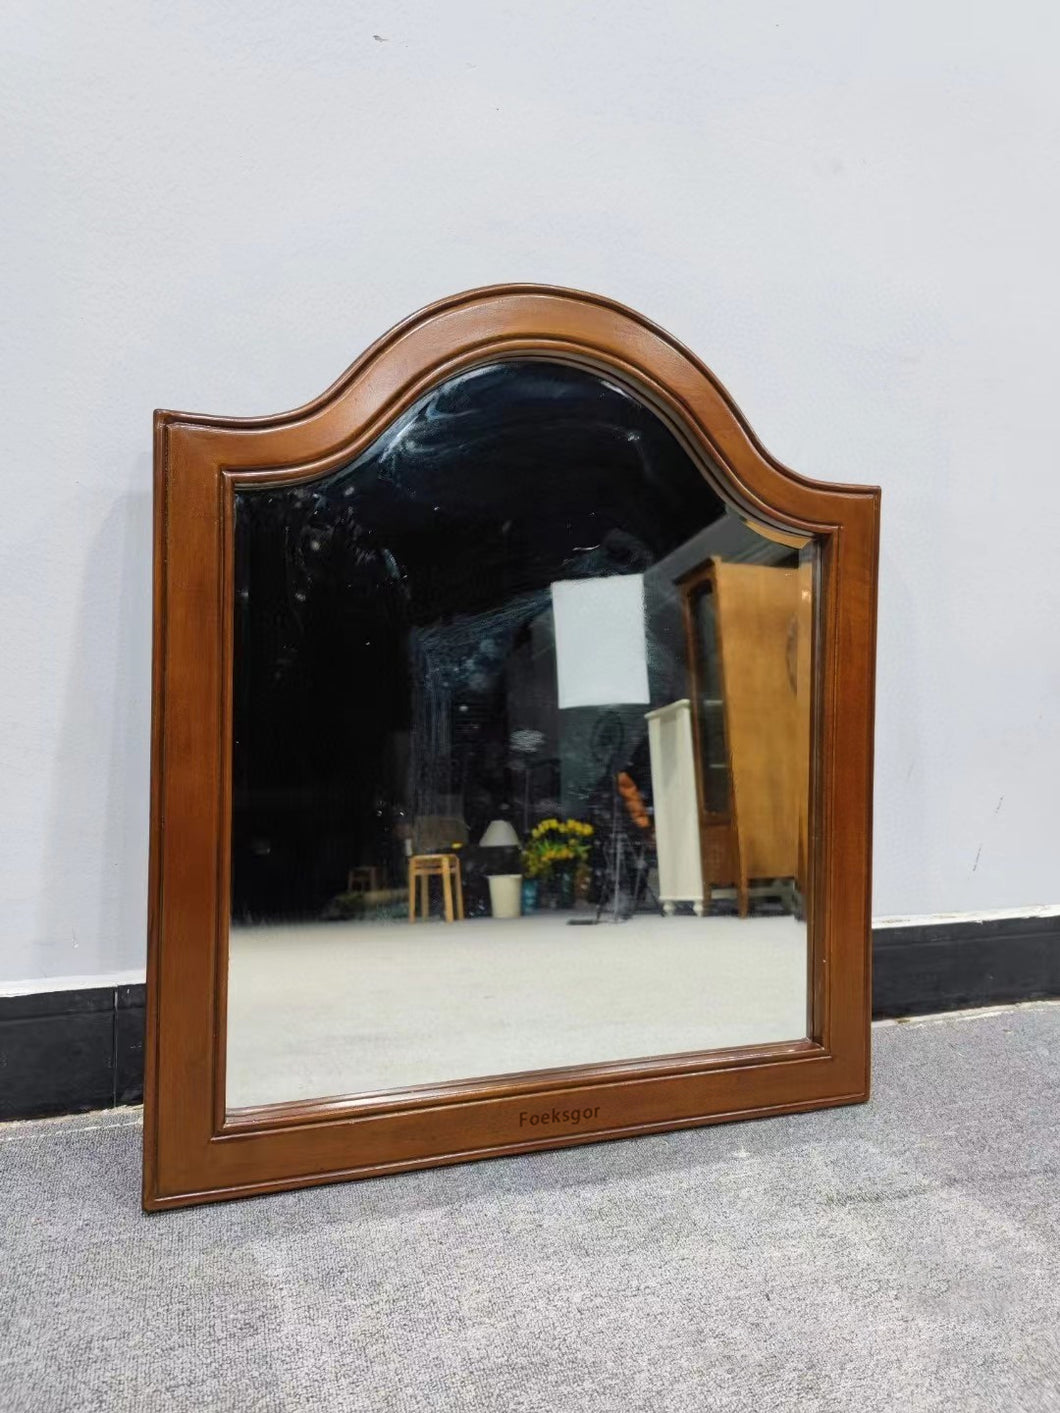 Foeksgor Decorative mirror, wooden frame wall mirror